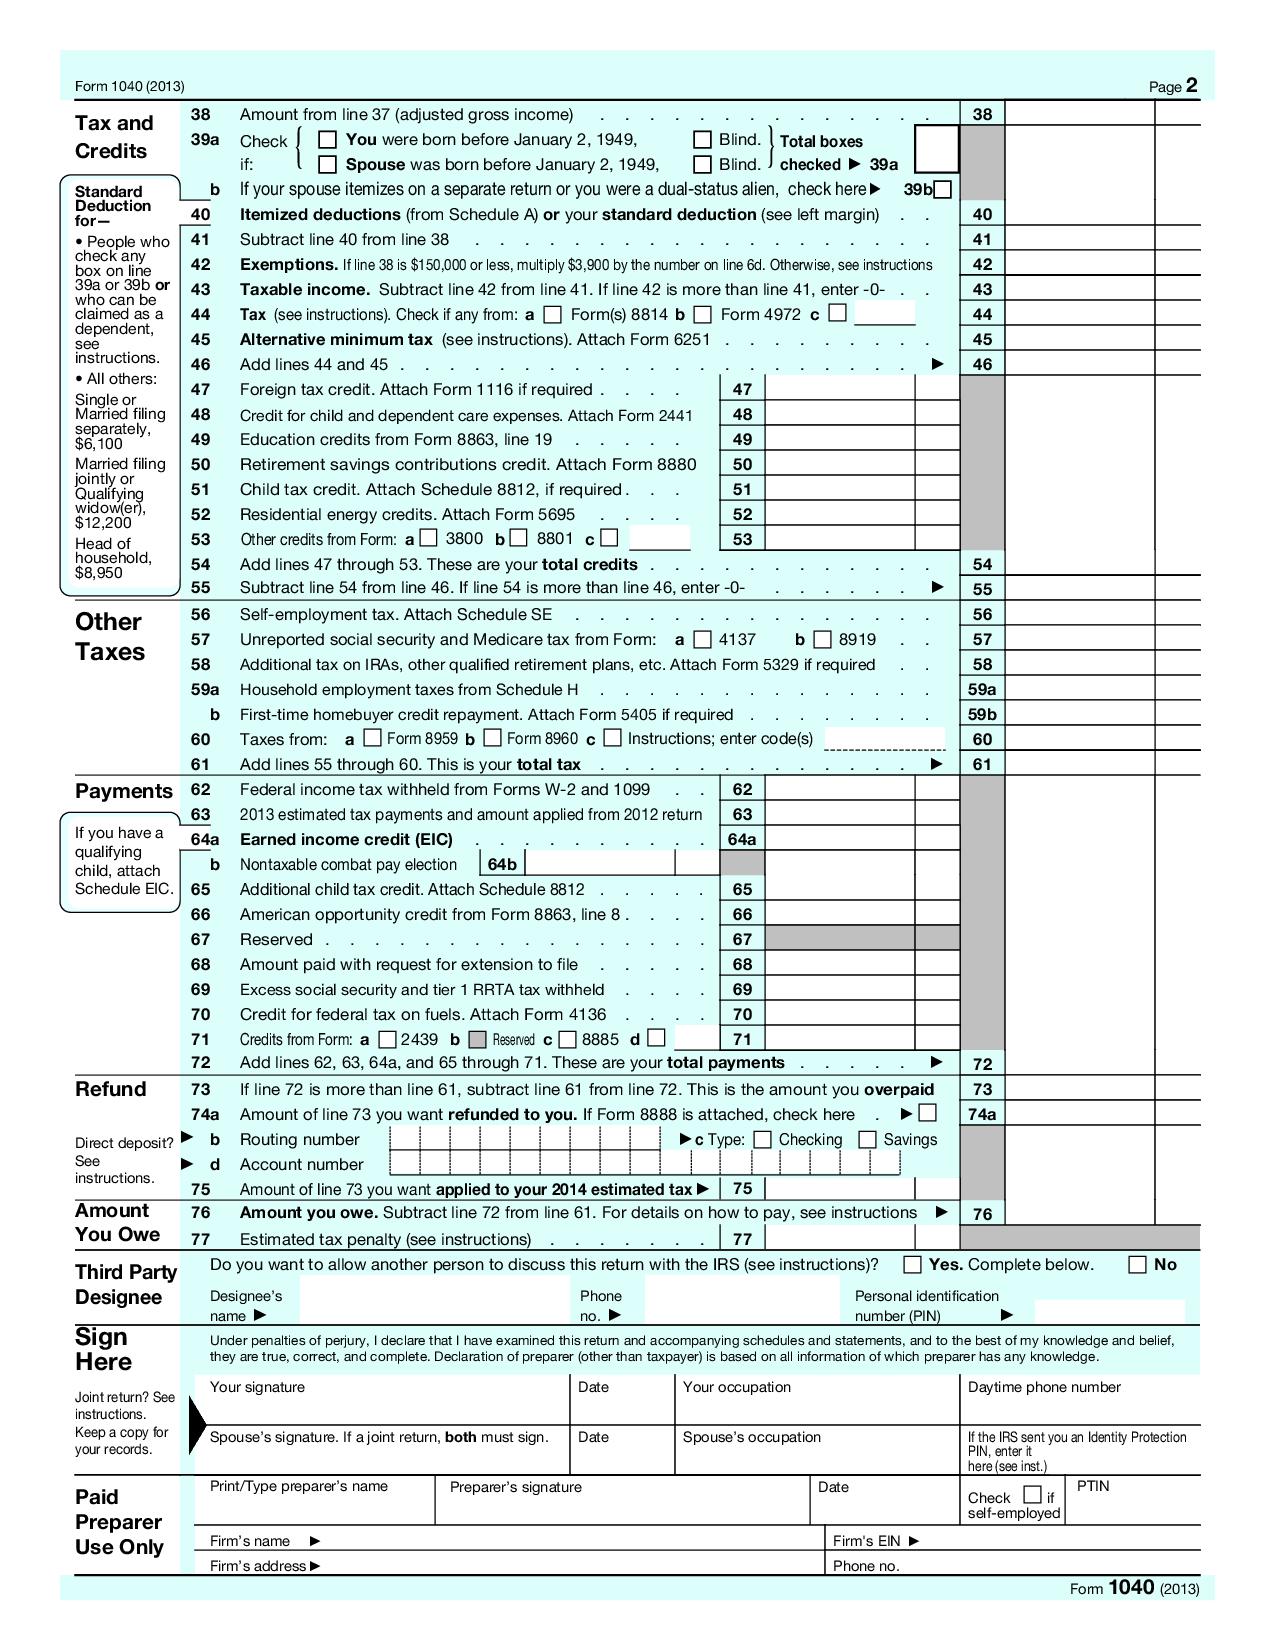 1040 U.S. Individual Tax Return with Schedule A